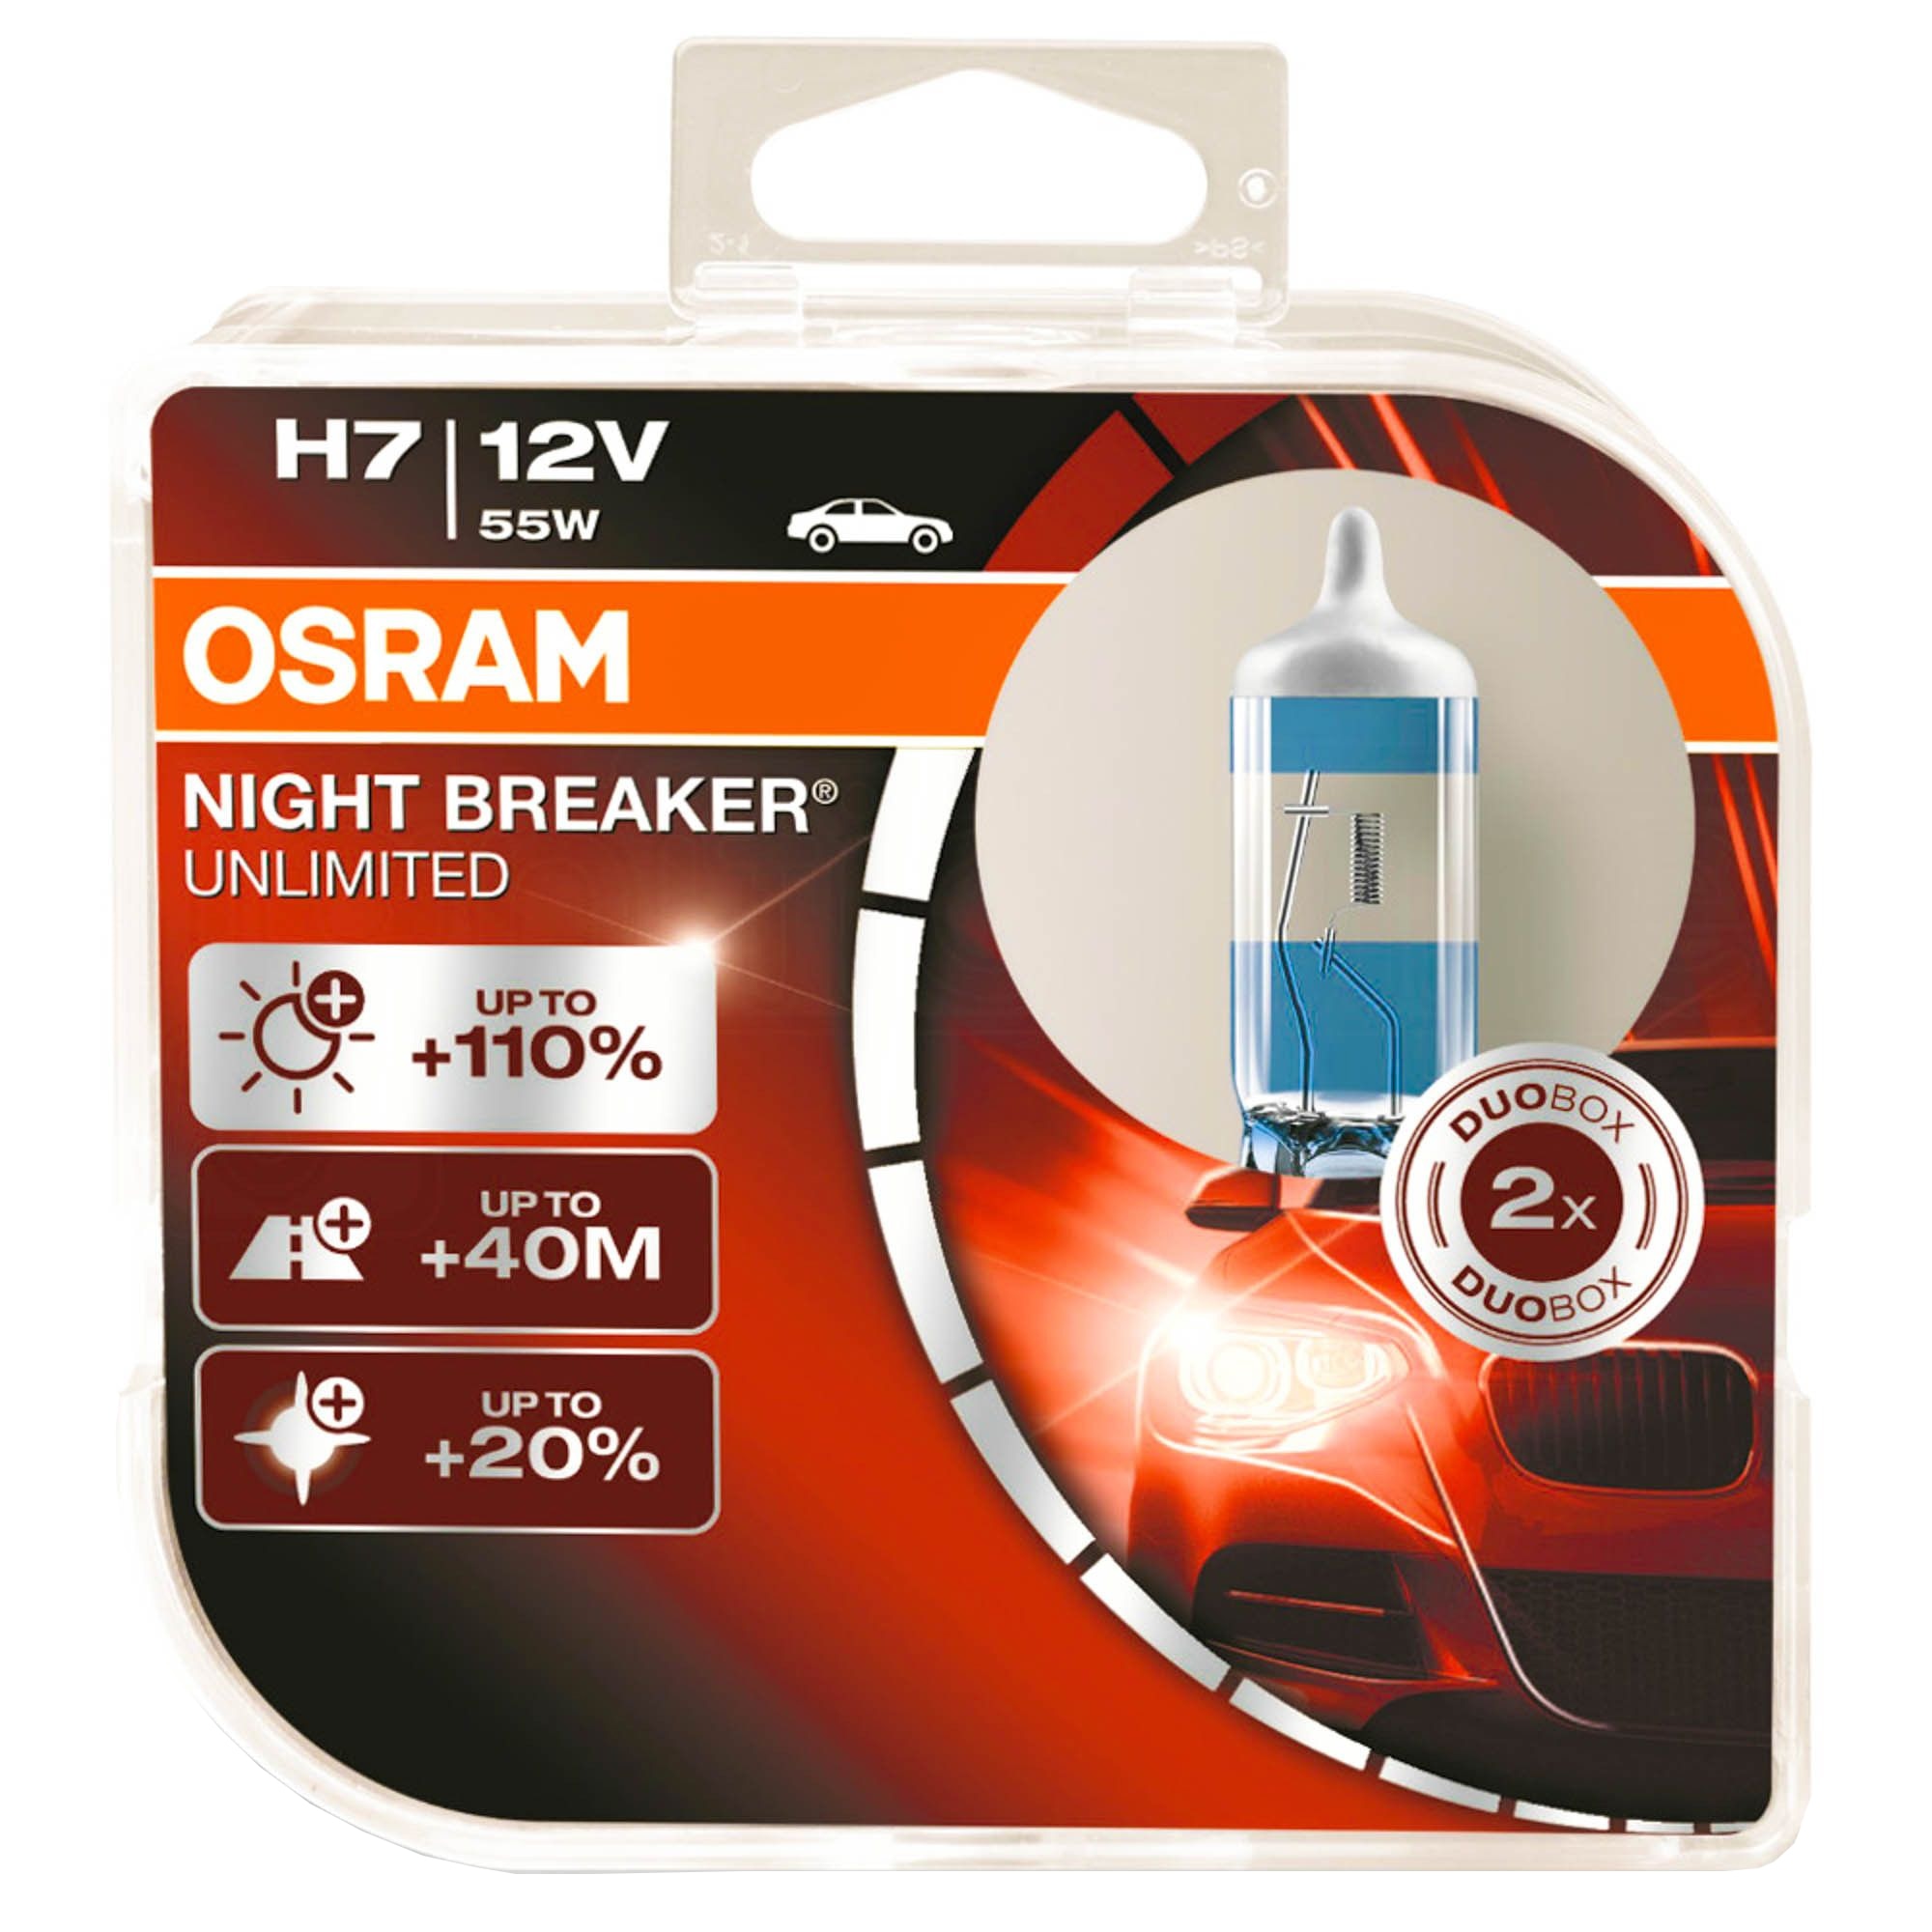 Osram H7 Night Breaker Unlimited halogén fényszóró izzó készlet, 12V, 55W,  2 darab 